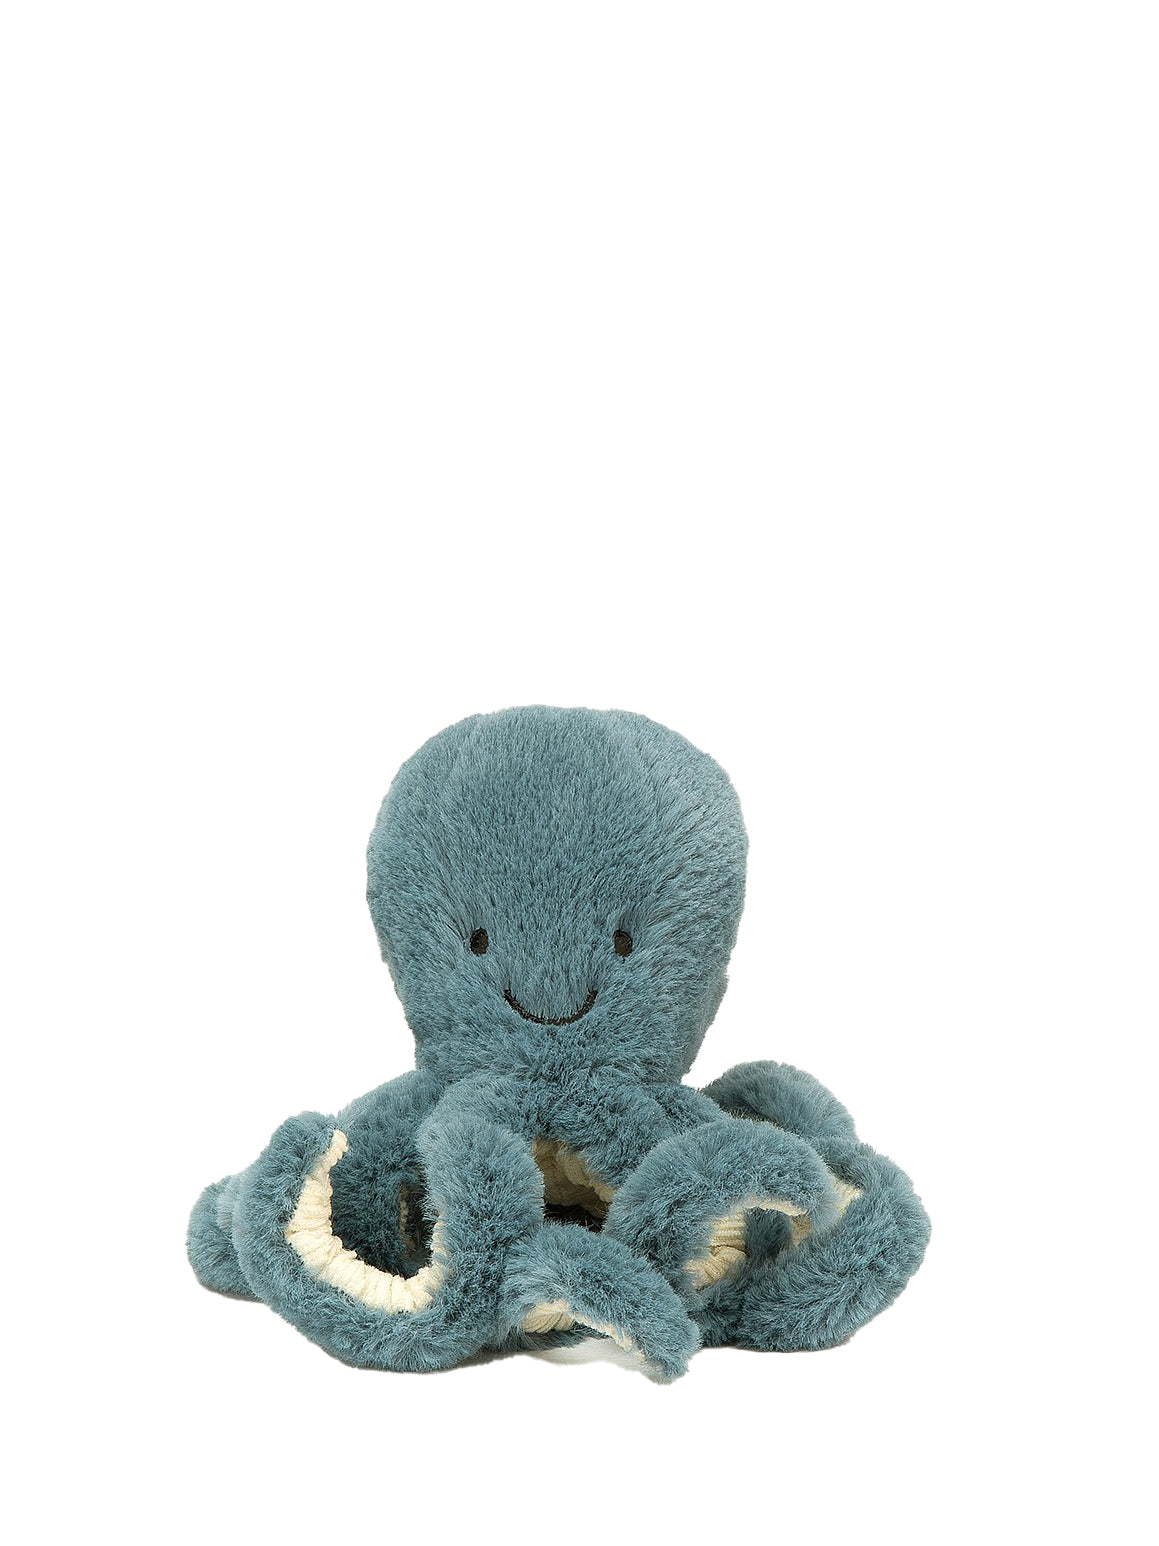 Storm Octopus, tiny